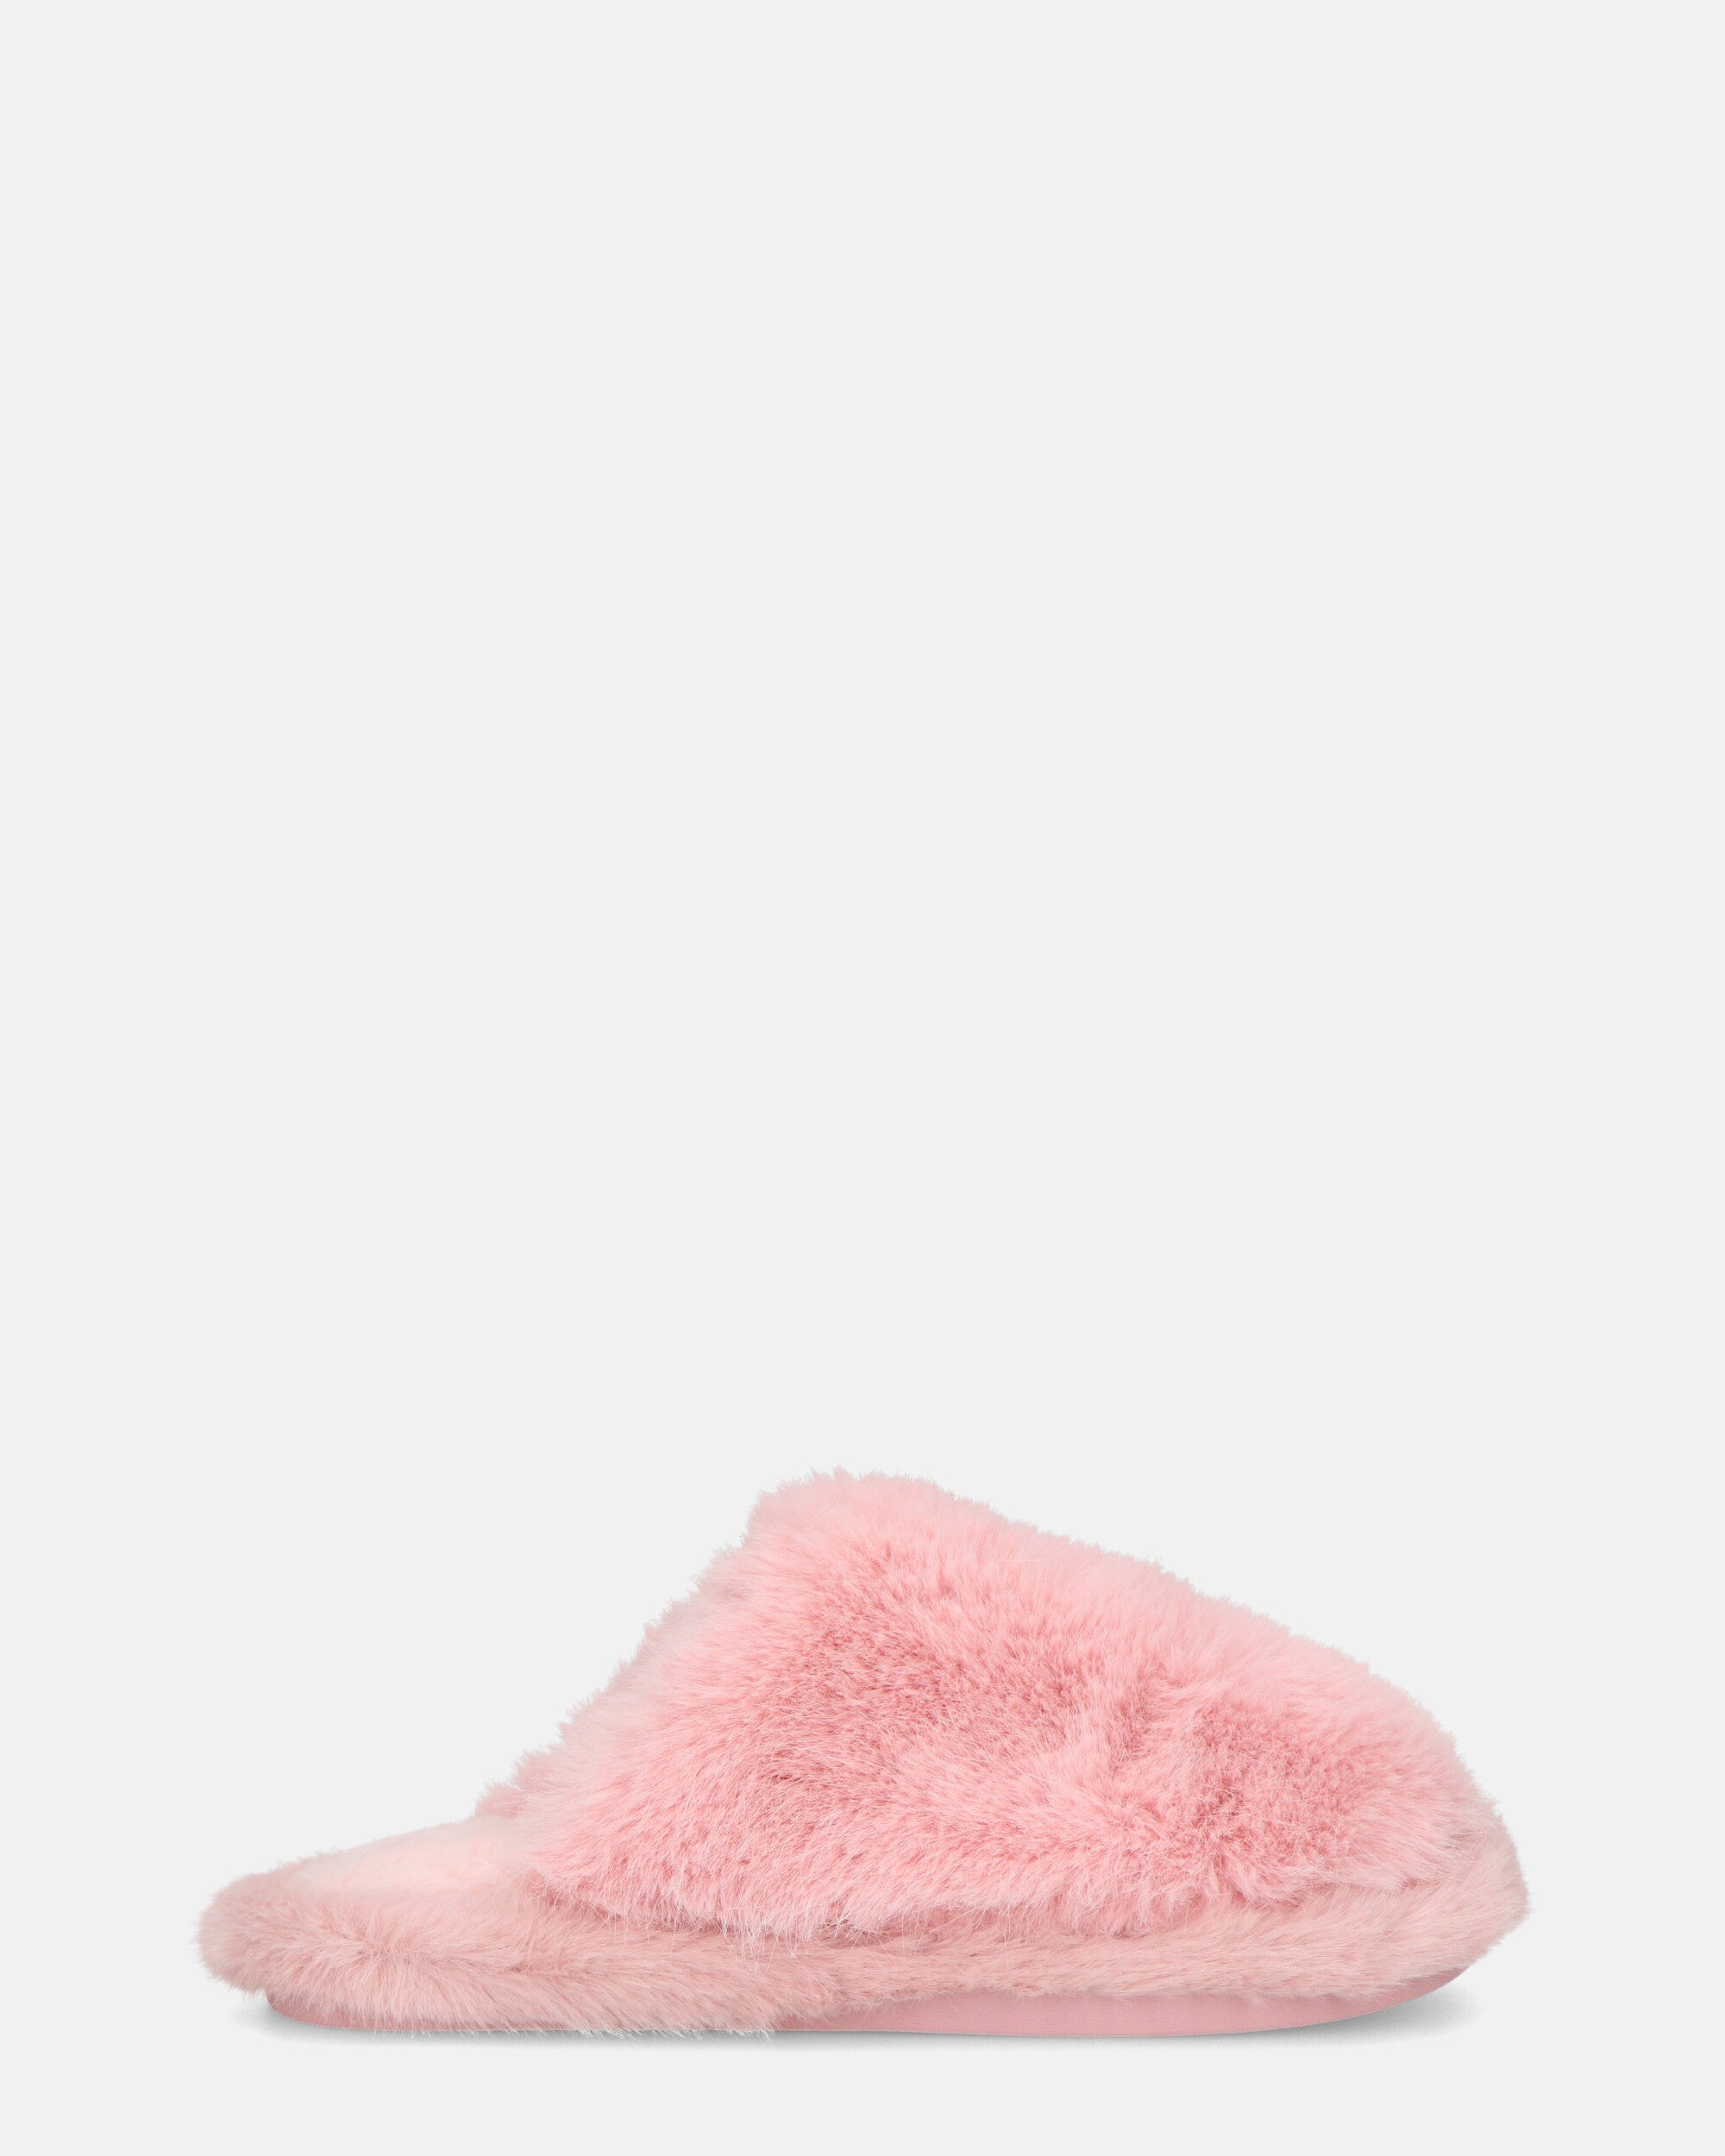 NOARA - pantuflas de piel rosa con puntera cerrada